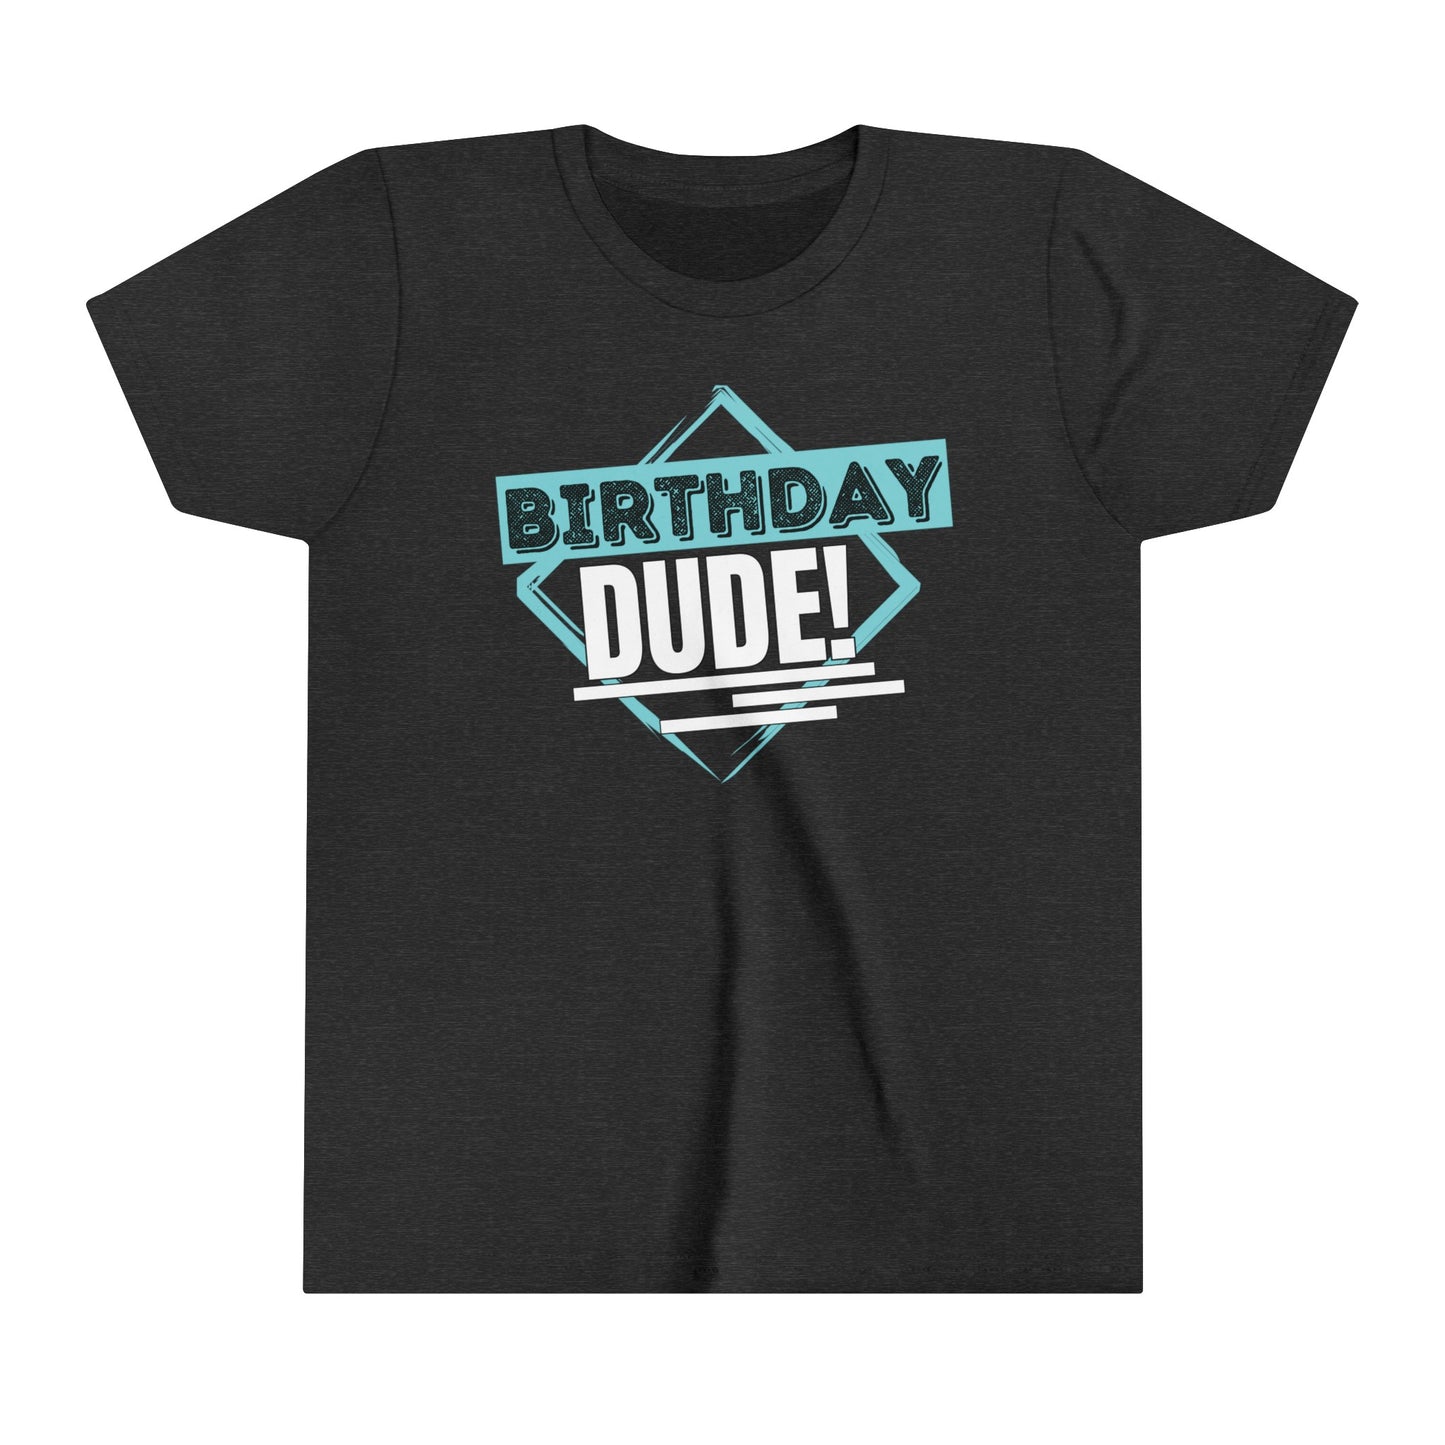 Birthday Dude T-Shirt,